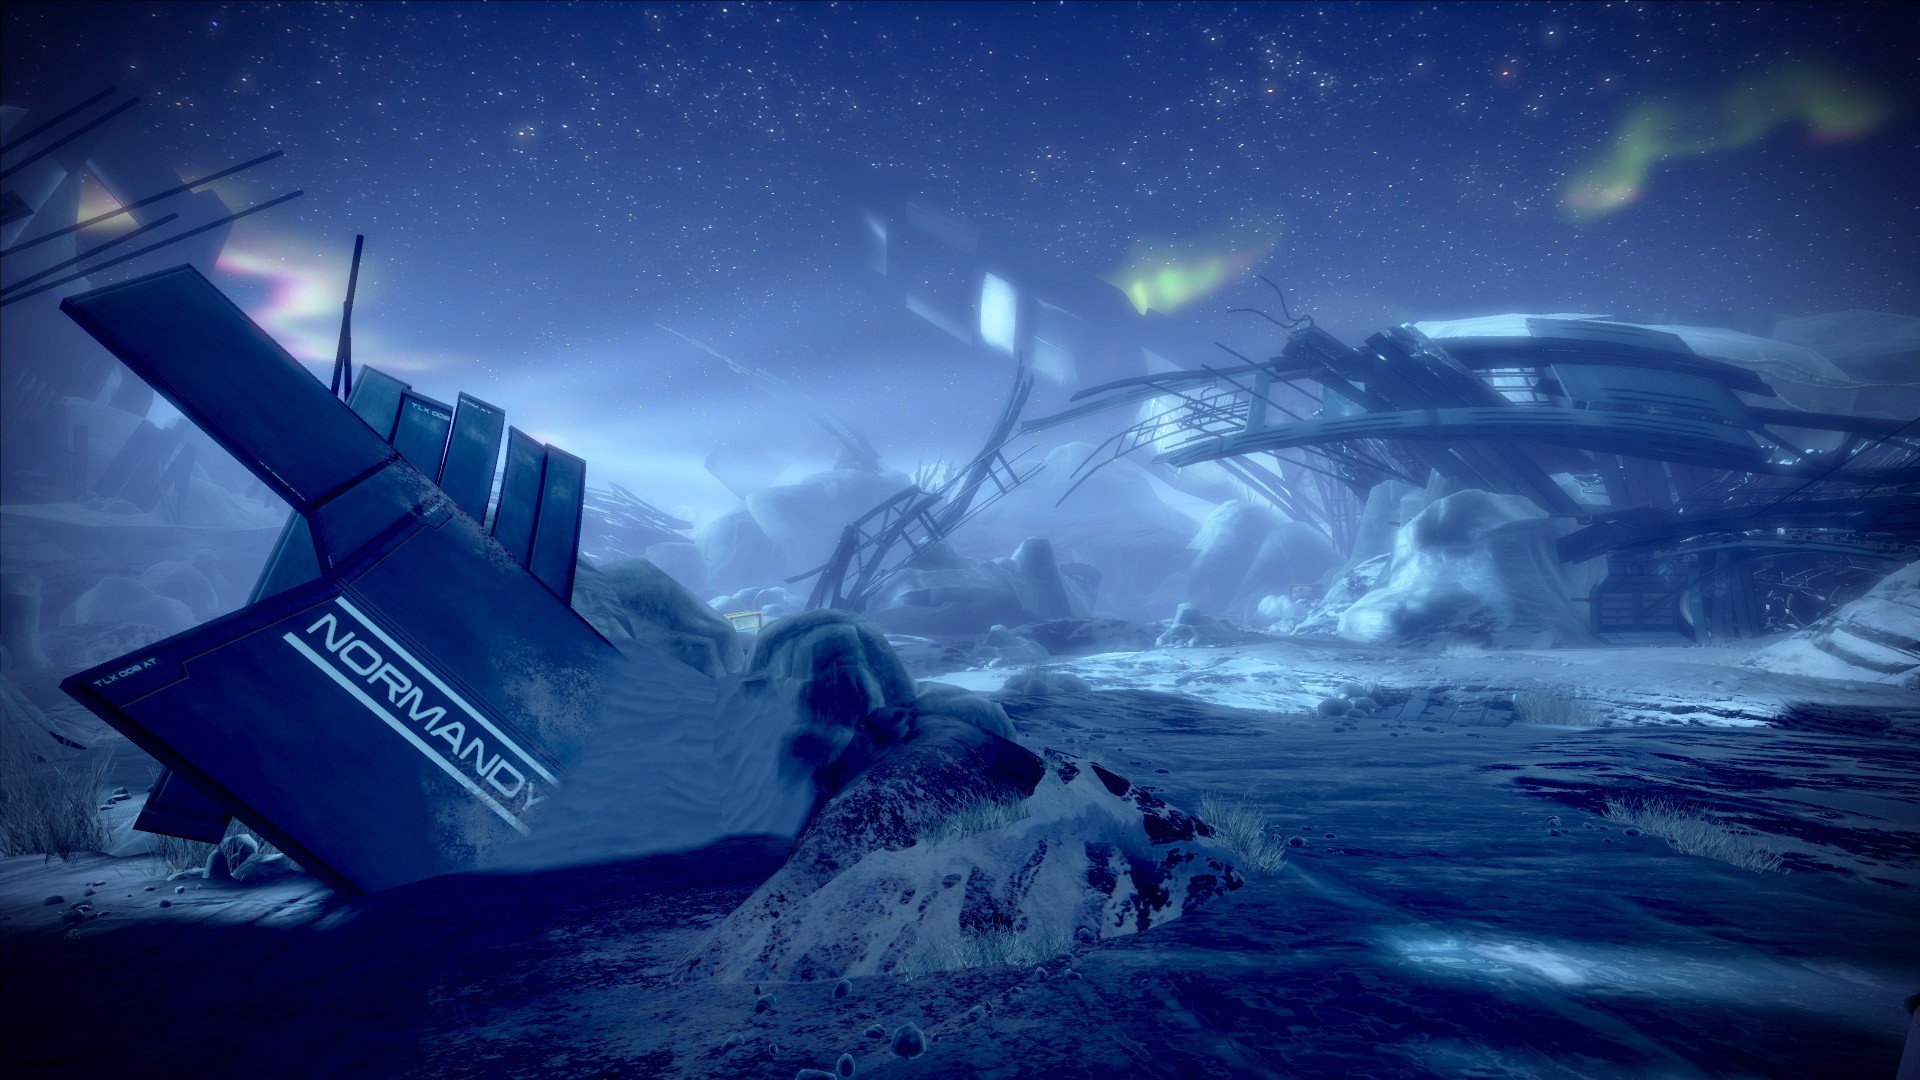 Mass Effect, Normandy Sr 1 Wallpaper